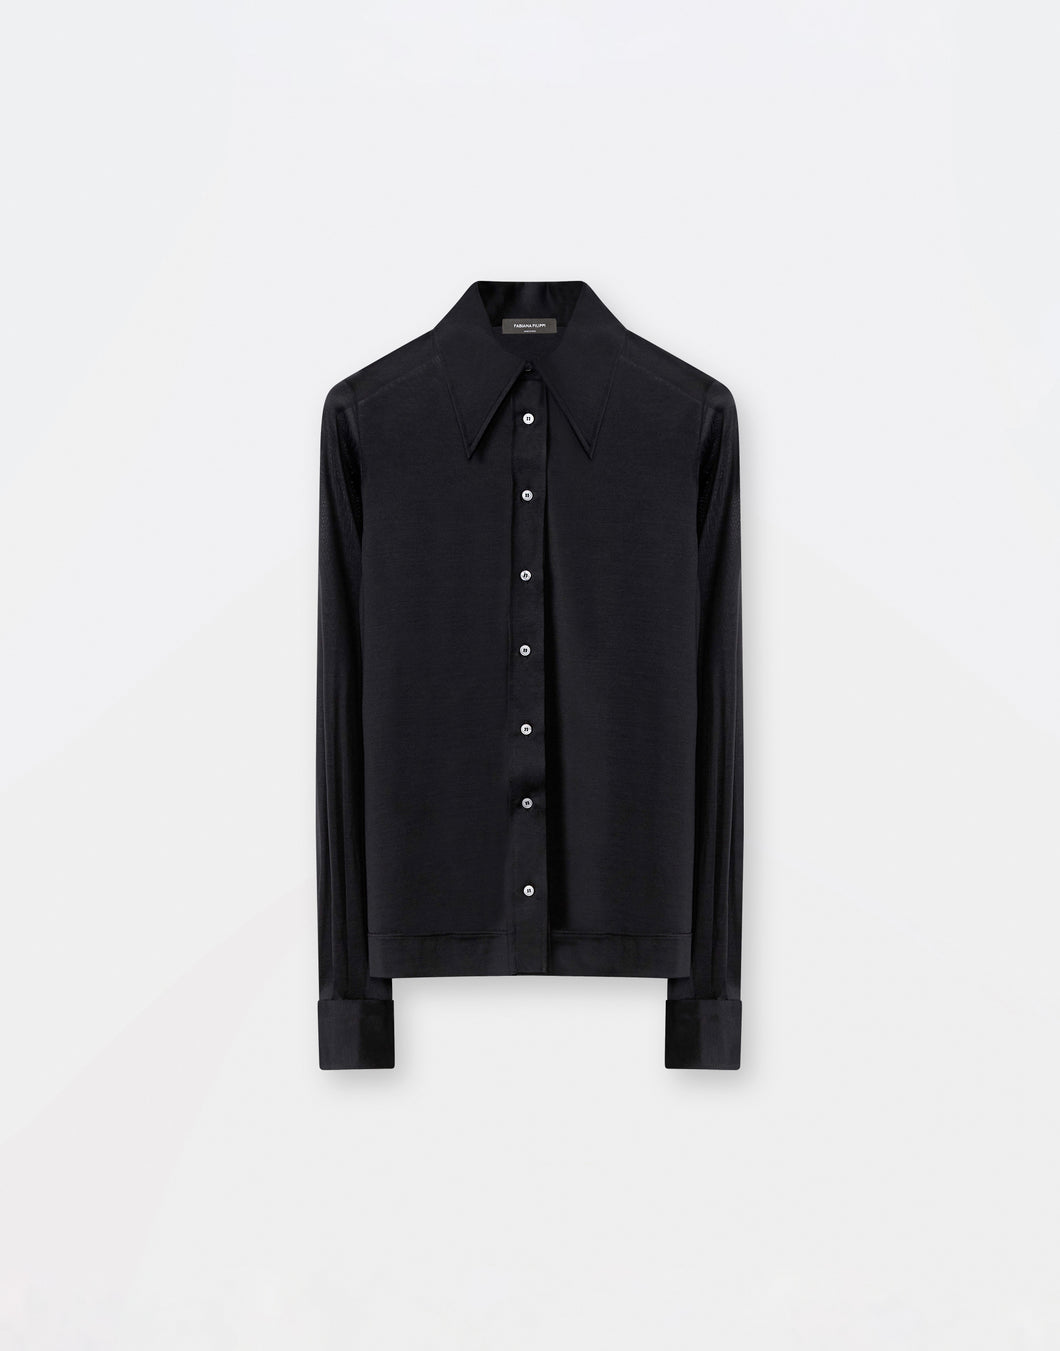 Silk jersey shirt, black